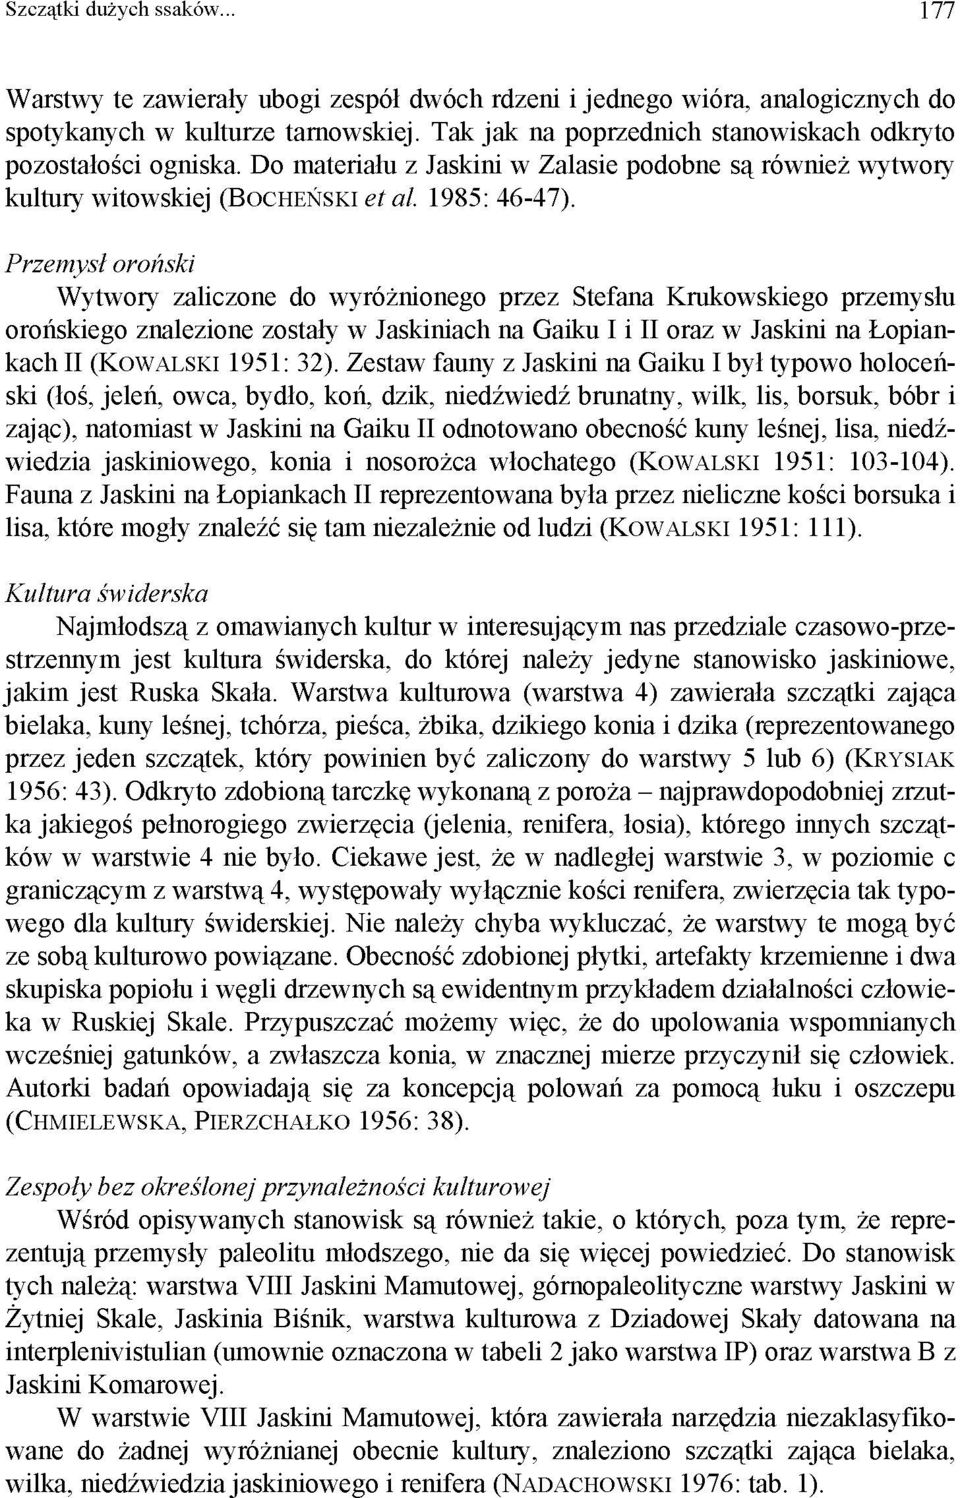 Przemysł oroński Wytwory zaliczone do wyróżnionego przez Stefana Krukowskiego przemysłu orońskiego znalezione zostały w Jaskiniach na Gaiku I i II oraz w Jaskini na Łopiankach II (KOWALSKI 1951: 32).